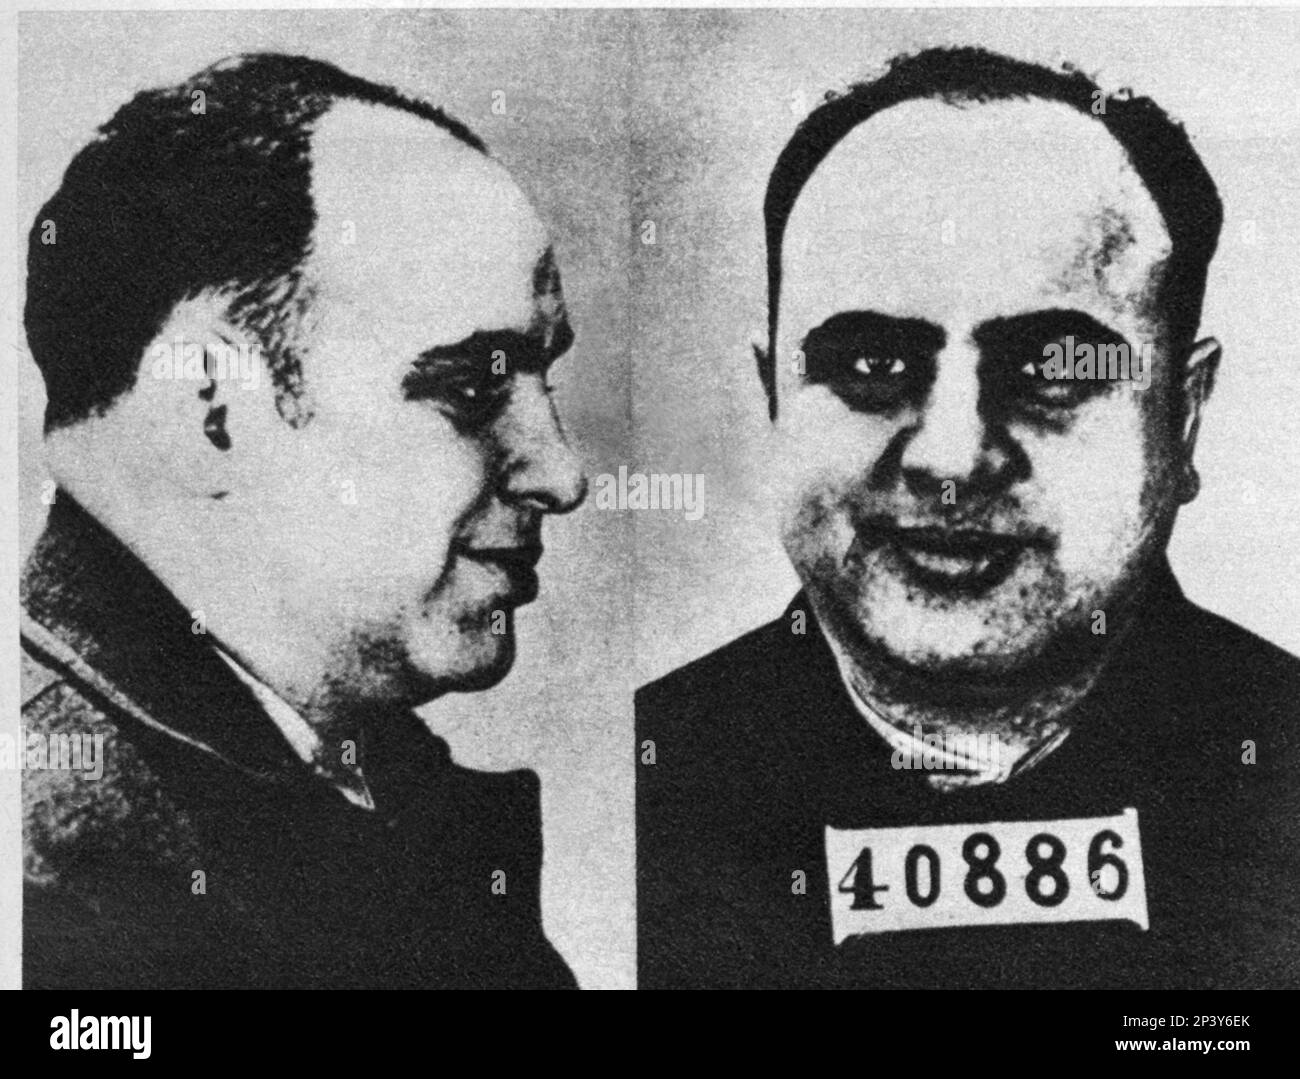 1939 : das berühmte Gangstern AL CAPONE ( geboren Alphonse Caponi , New York , 1899 - Palm Spring 1947 ) wurde in Alcatraz , San Francisco - FOTO SEGNALETICA - Fotokabine - Carcerato - incarcerato - delinquente - Mafia - Mafioso - profilo --- Archivio GBB eingesperrt Stockfoto